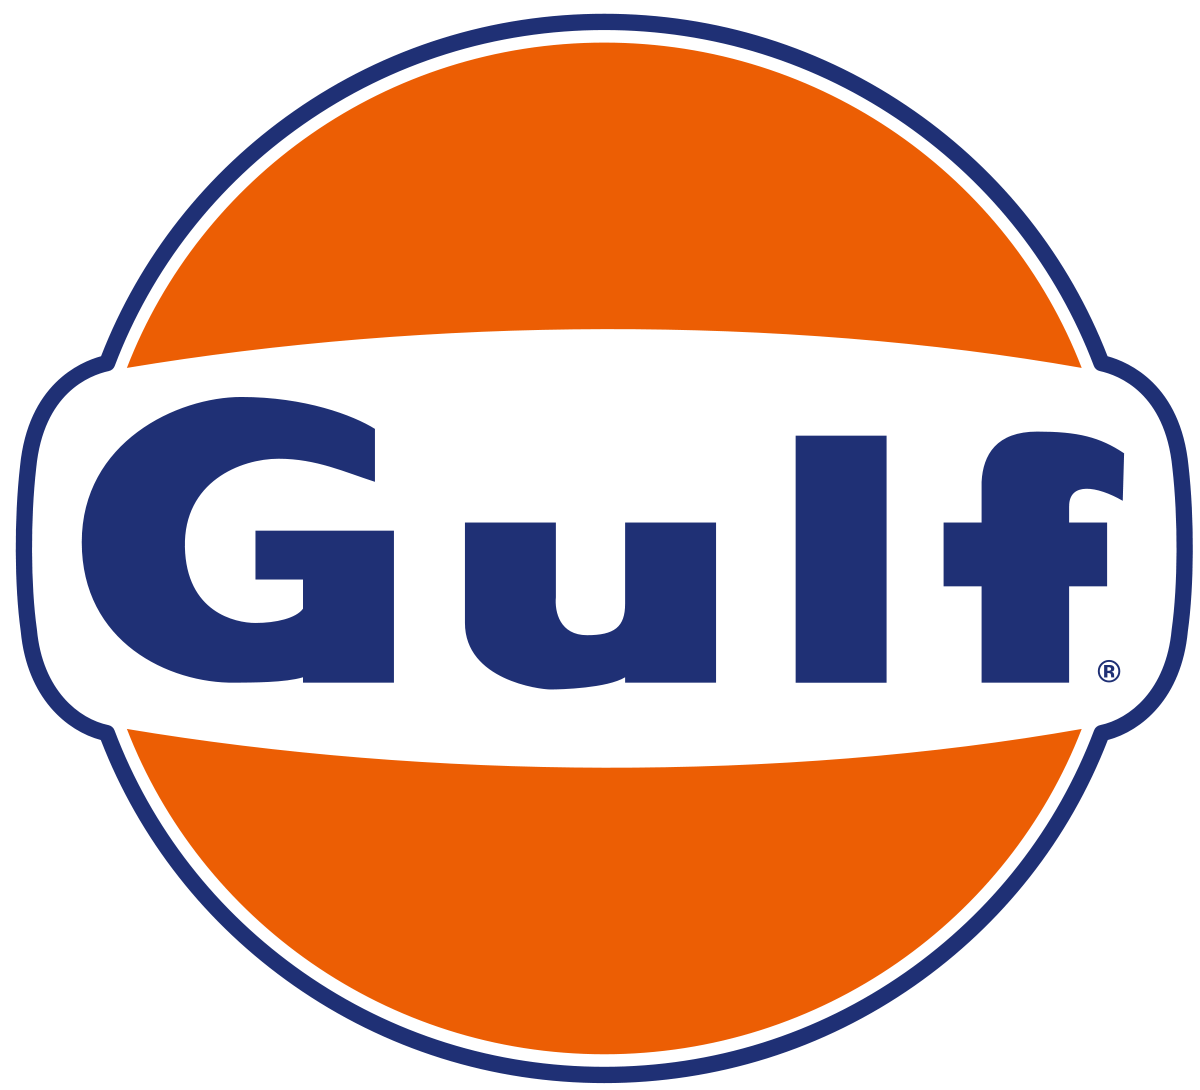 Sunoco Gas Station Logo - Gulf Oil